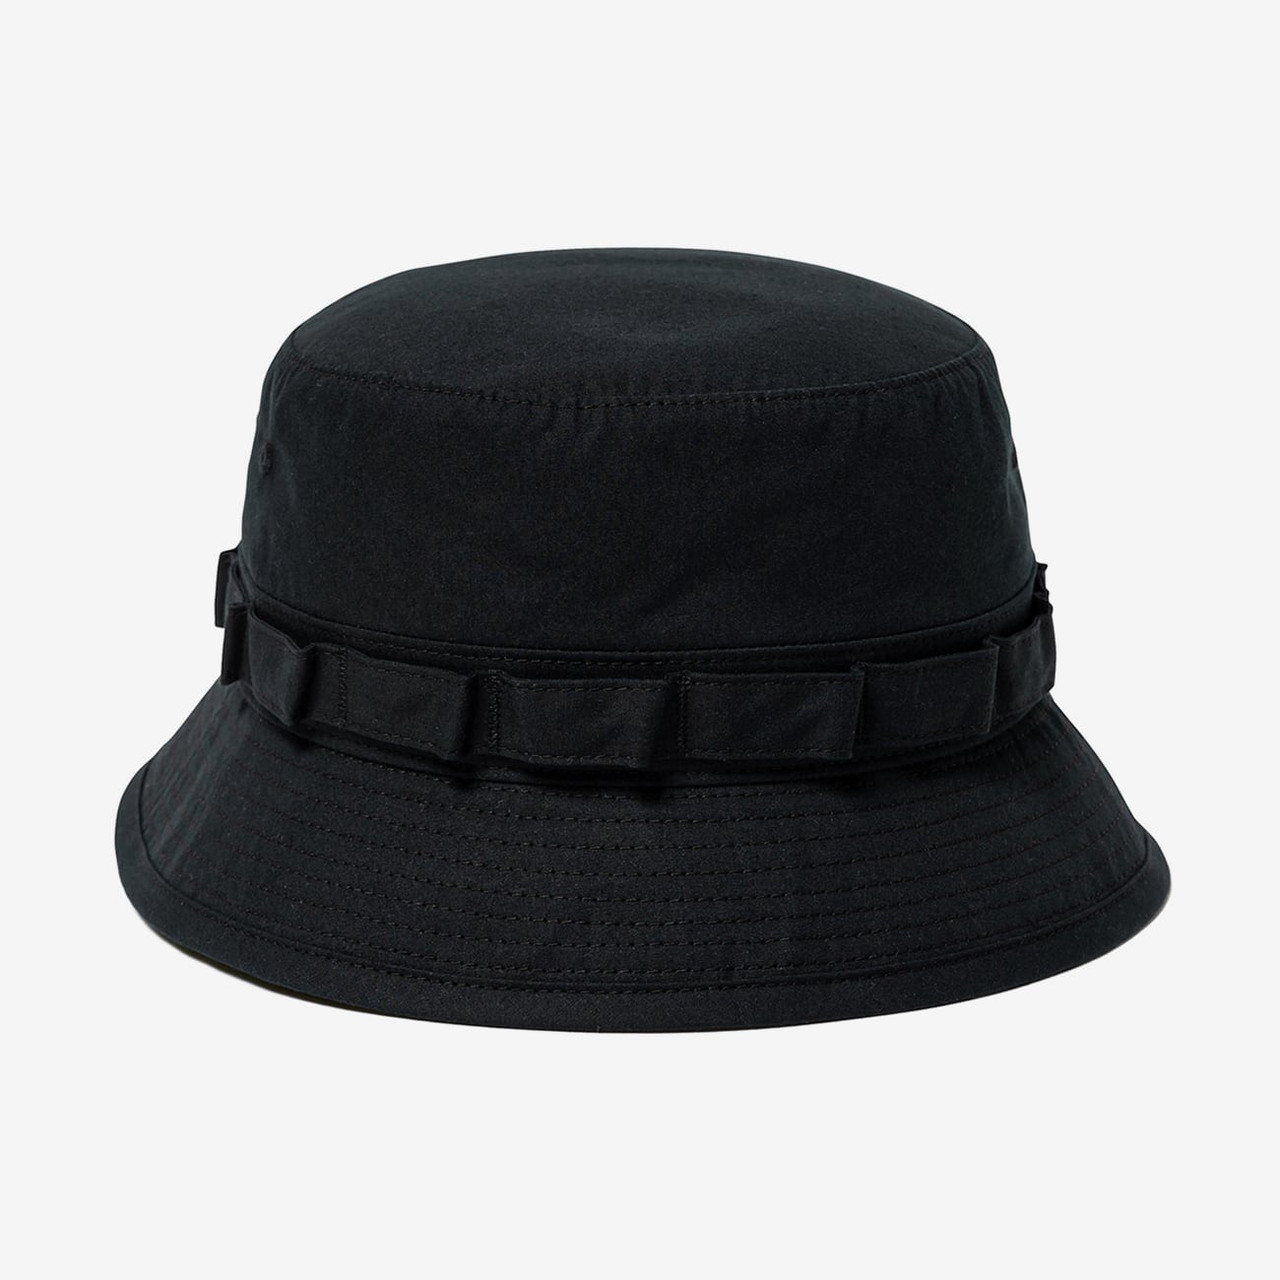 WTAPS Hat.Cap JUNGLE 01 / HAT / COTTON. WEATHER